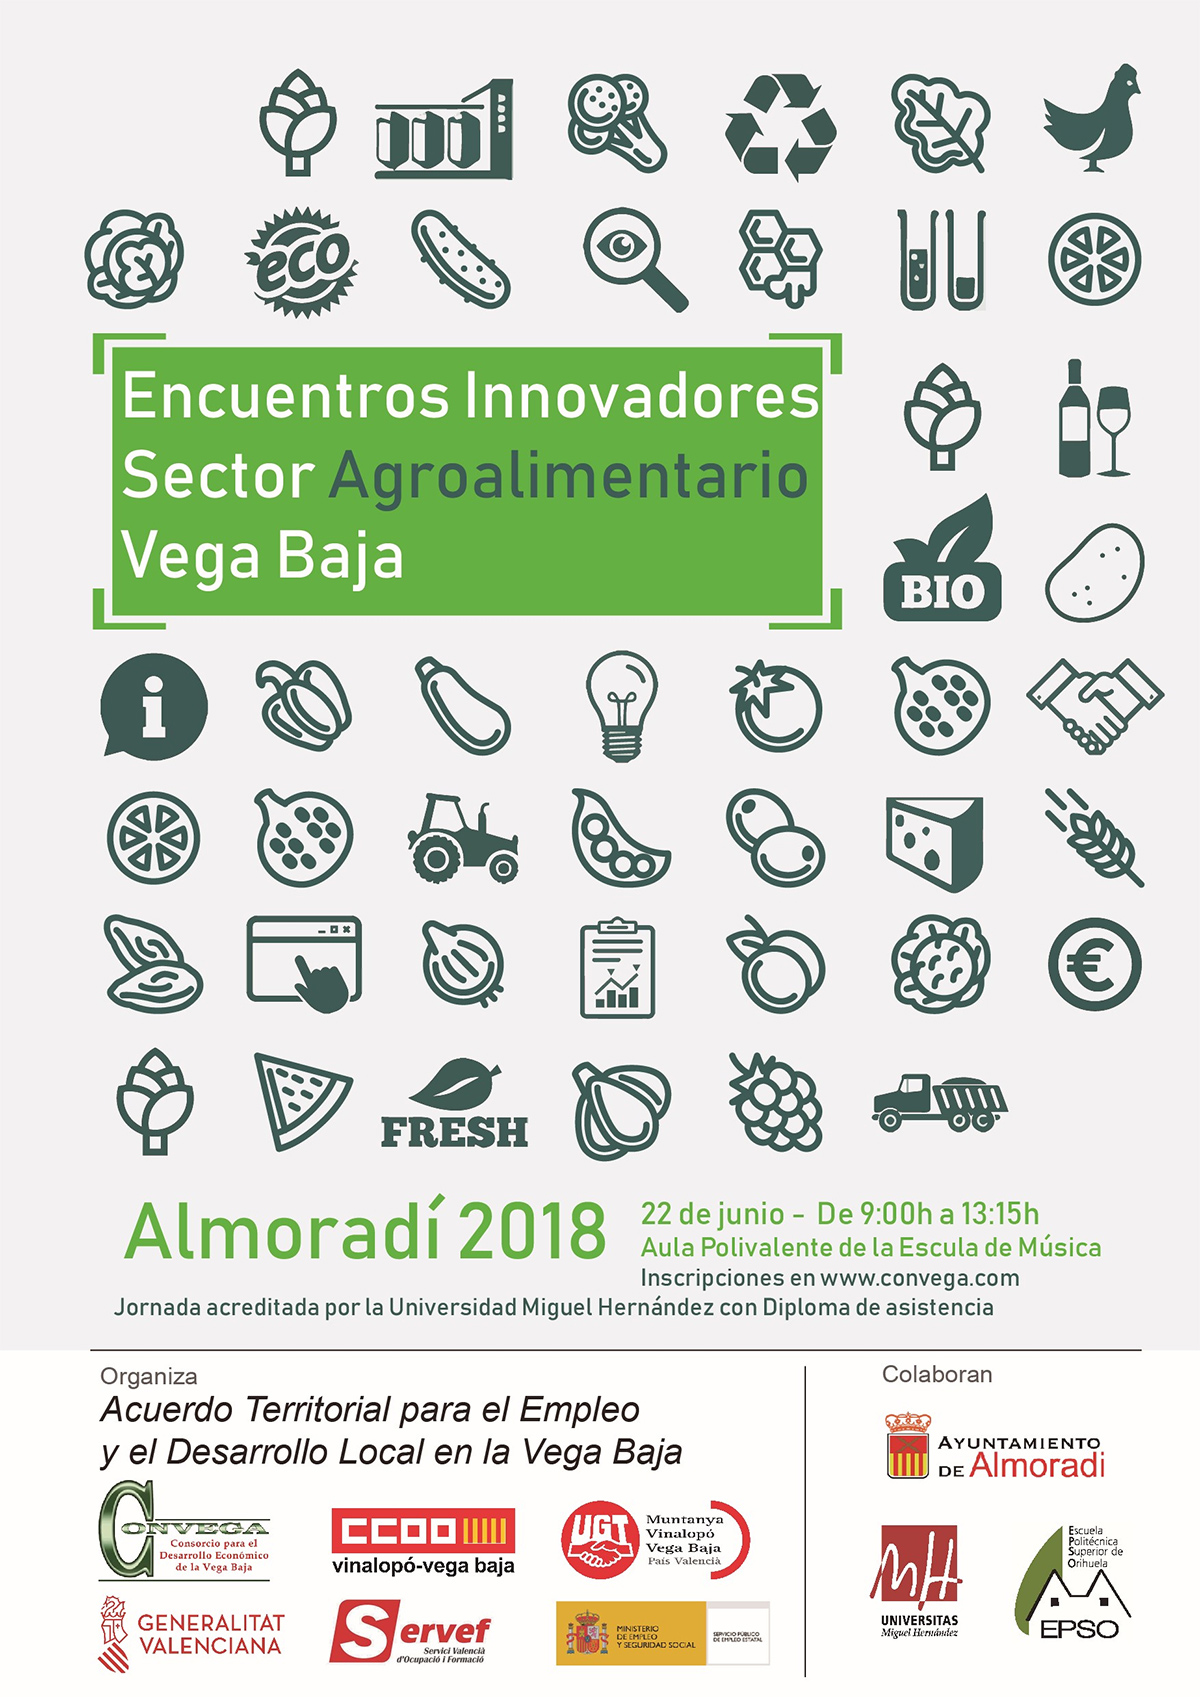 Encuentros Innovadores del Sector Agroalimentario Vega Baja